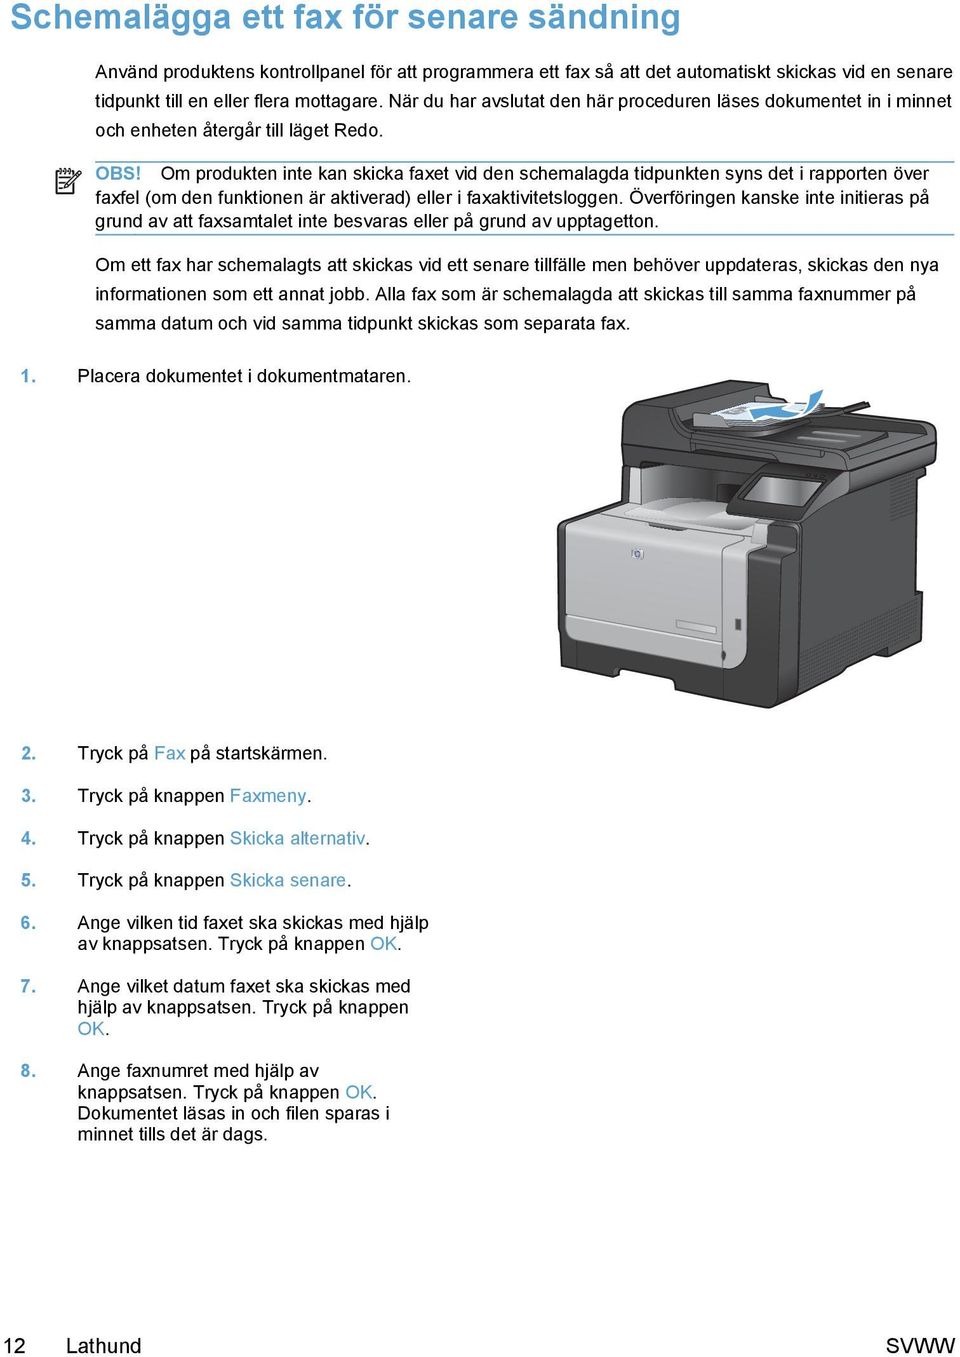 Om produkten inte kan skicka faxet vid den schemalagda tidpunkten syns det i rapporten över faxfel (om den funktionen är aktiverad) eller i faxaktivitetsloggen.